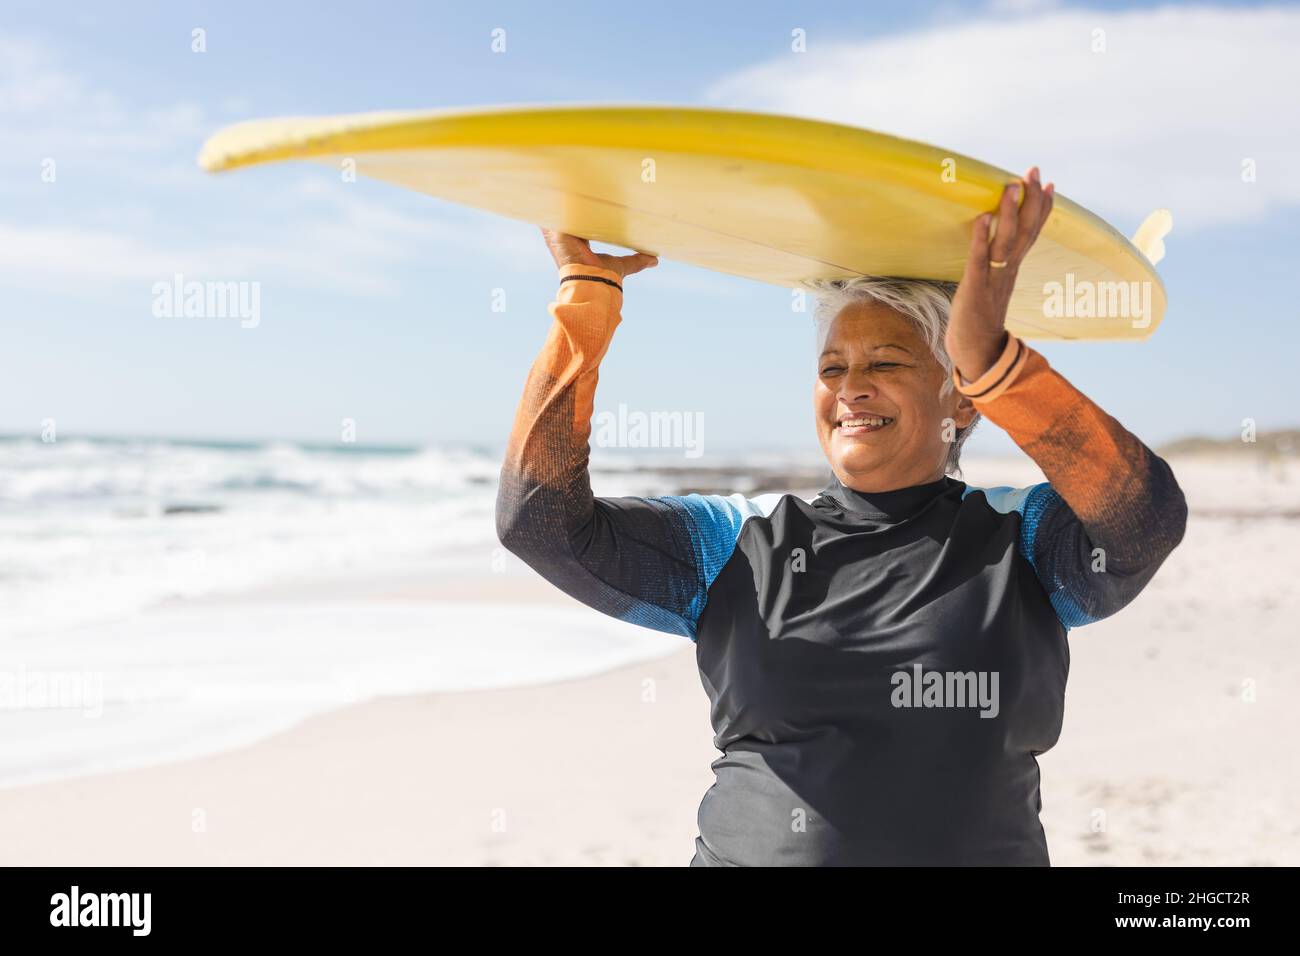 Glückliche ältere Frau aus dem Birazial genießt den Ruhestand, während sie am sonnigen Strand Surfbrett auf dem Kopf trägt Stockfoto